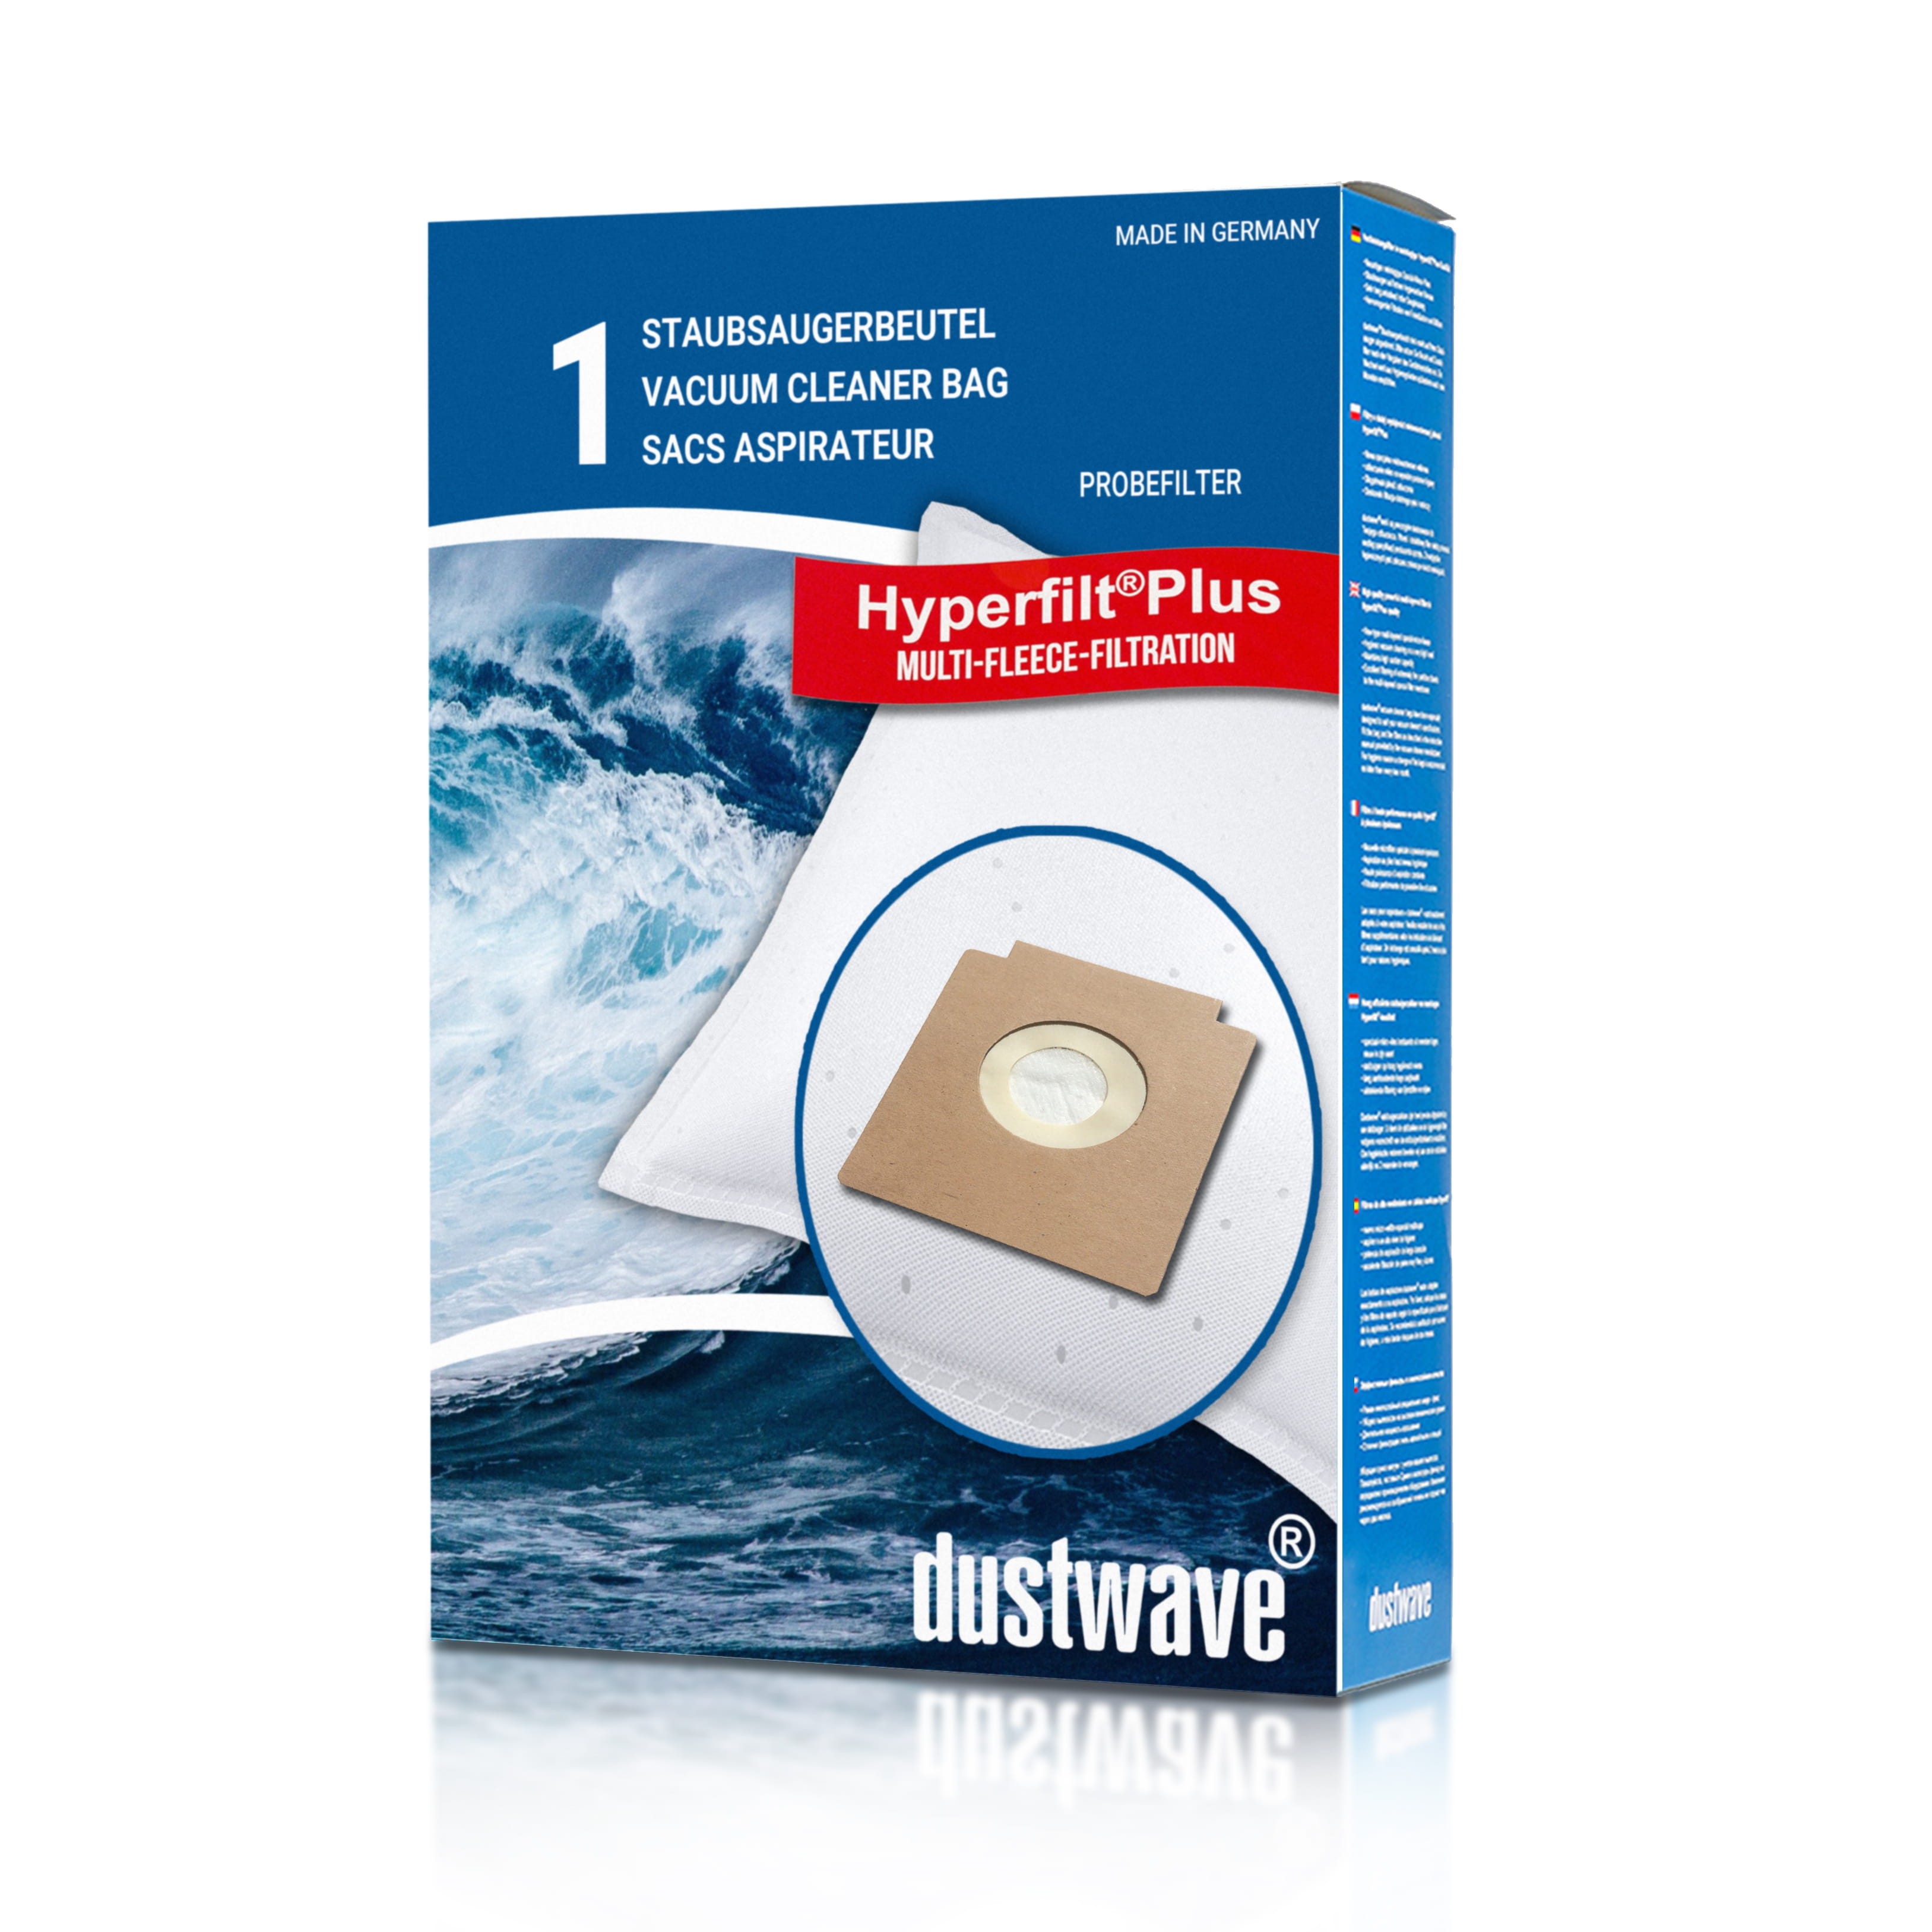 Dustwave® 1 Staubsaugerbeutel für Bomann CB 953 / CB953 - hocheffizient mit Hygieneverschluss - Made in Germany